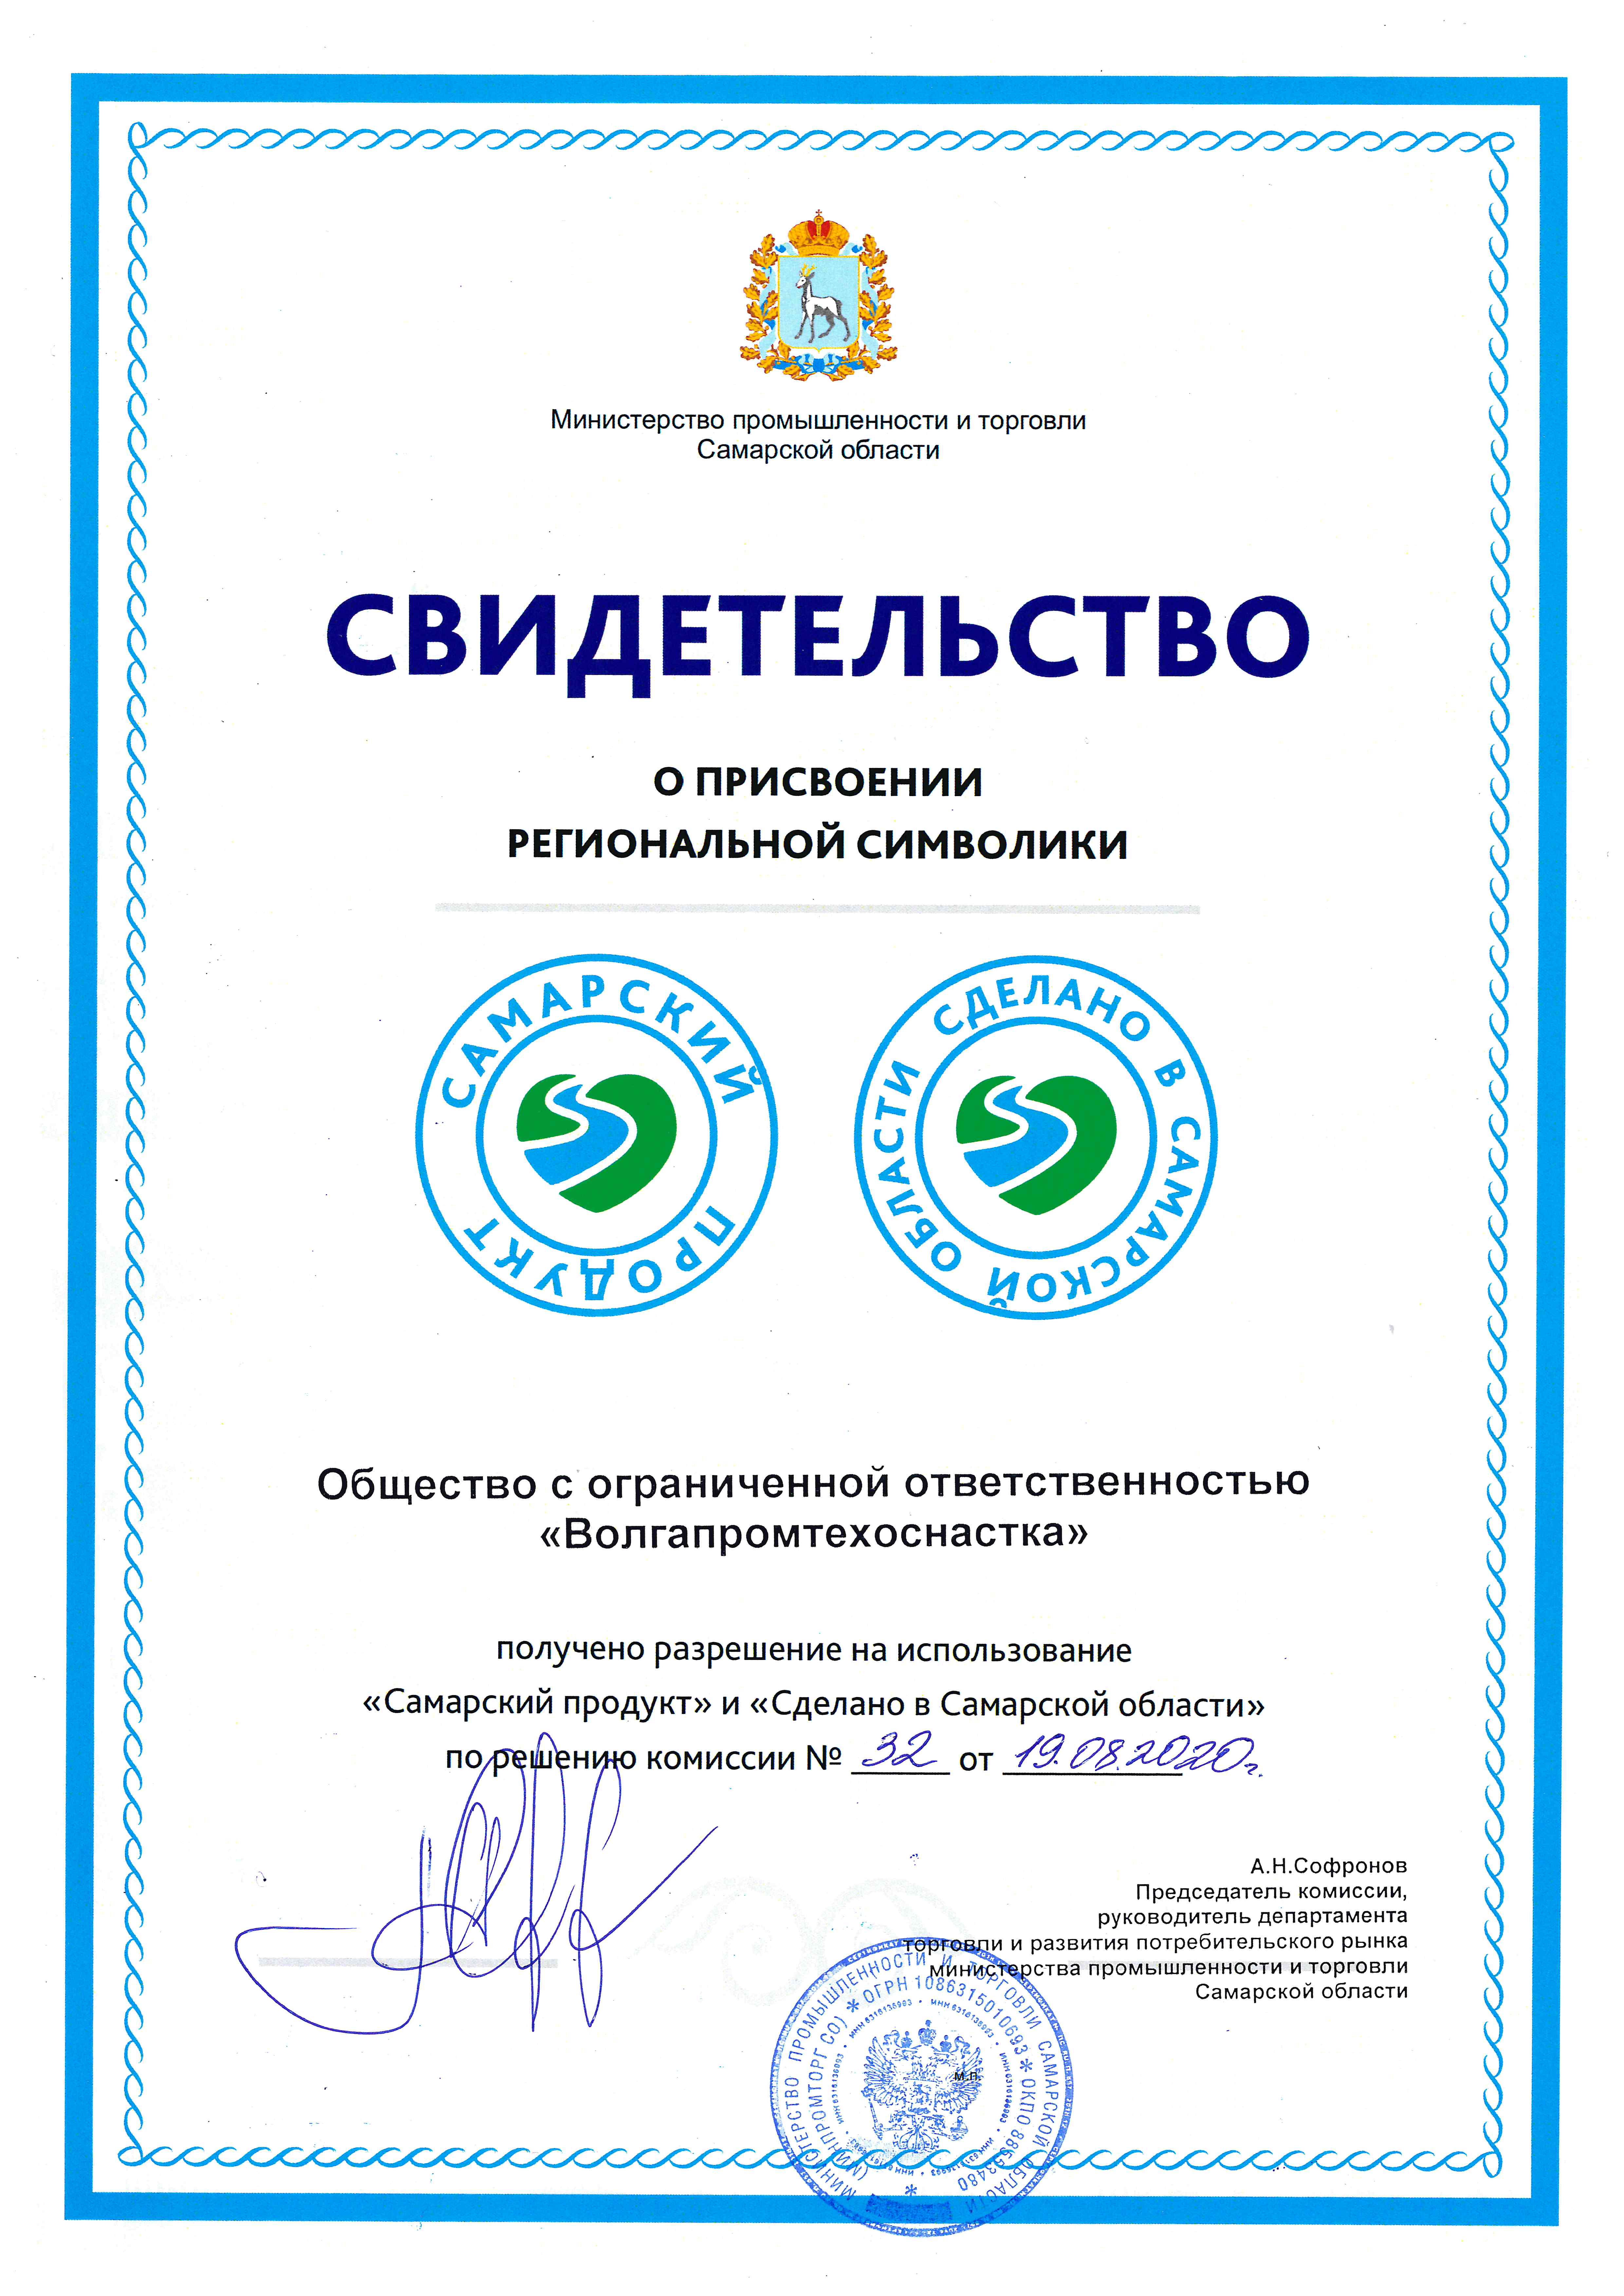 Компания ООО "ВПТО" получила свидетельство - "Сделано в Самарской области"!